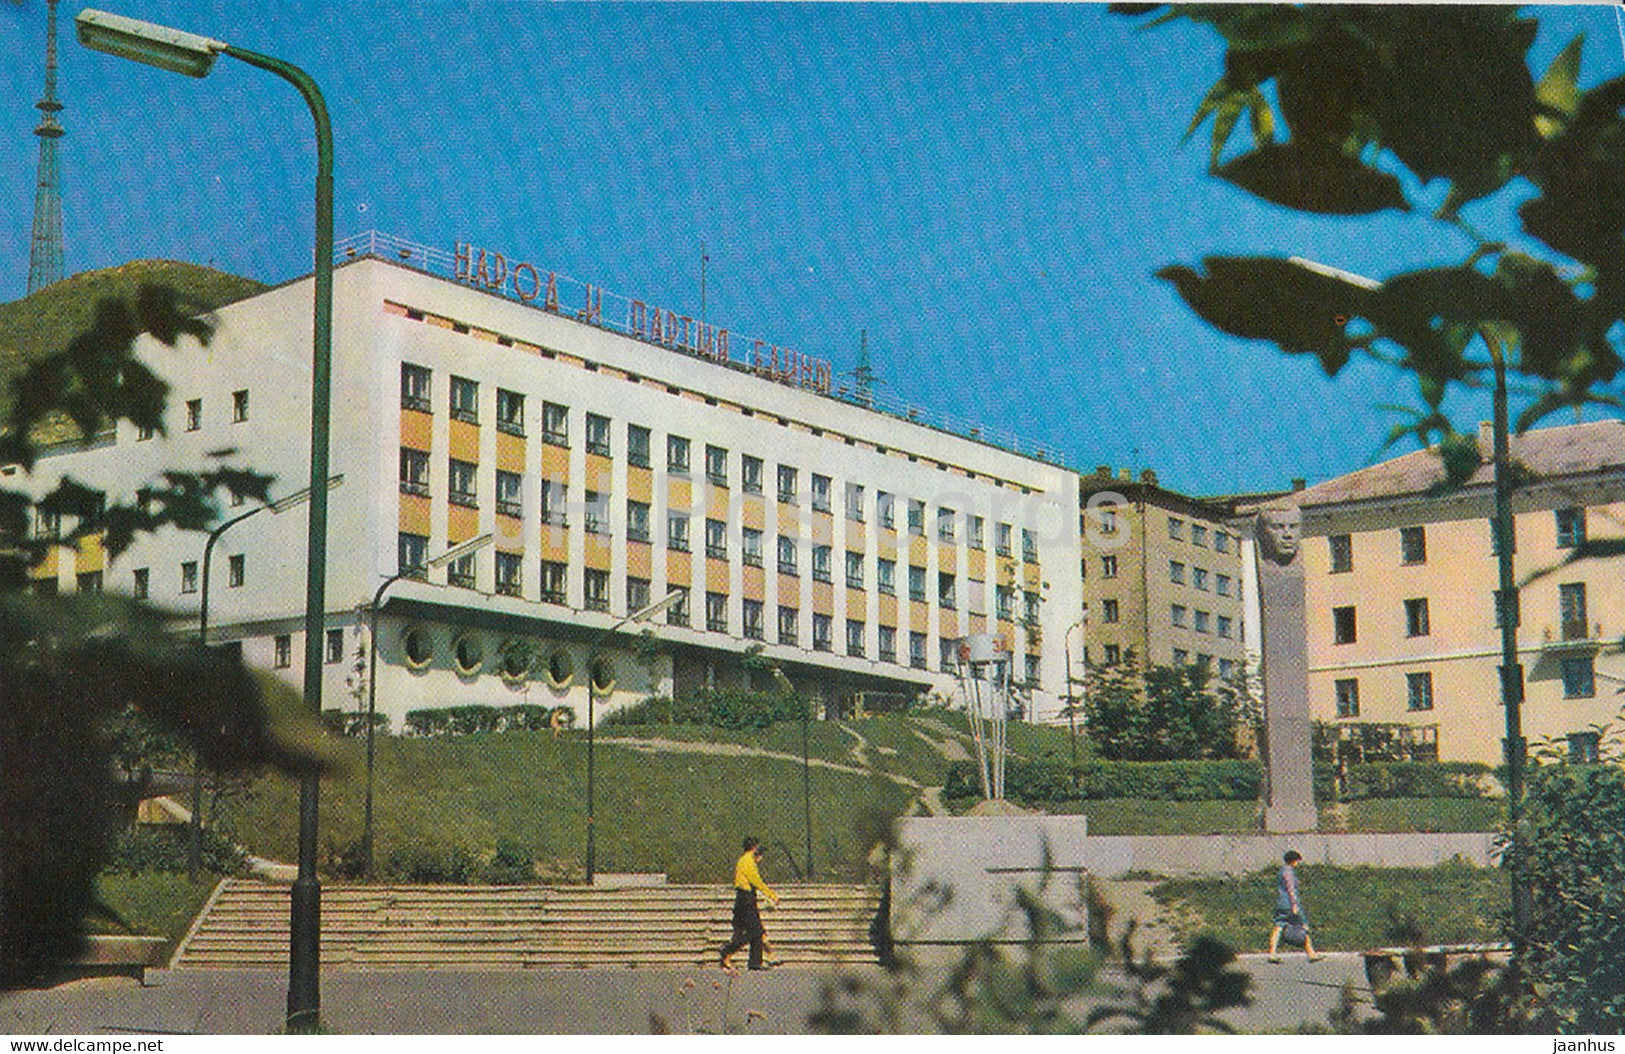 Vladivostok - House of Radio - 1973 - Russia USSR - unused - JH Postcards